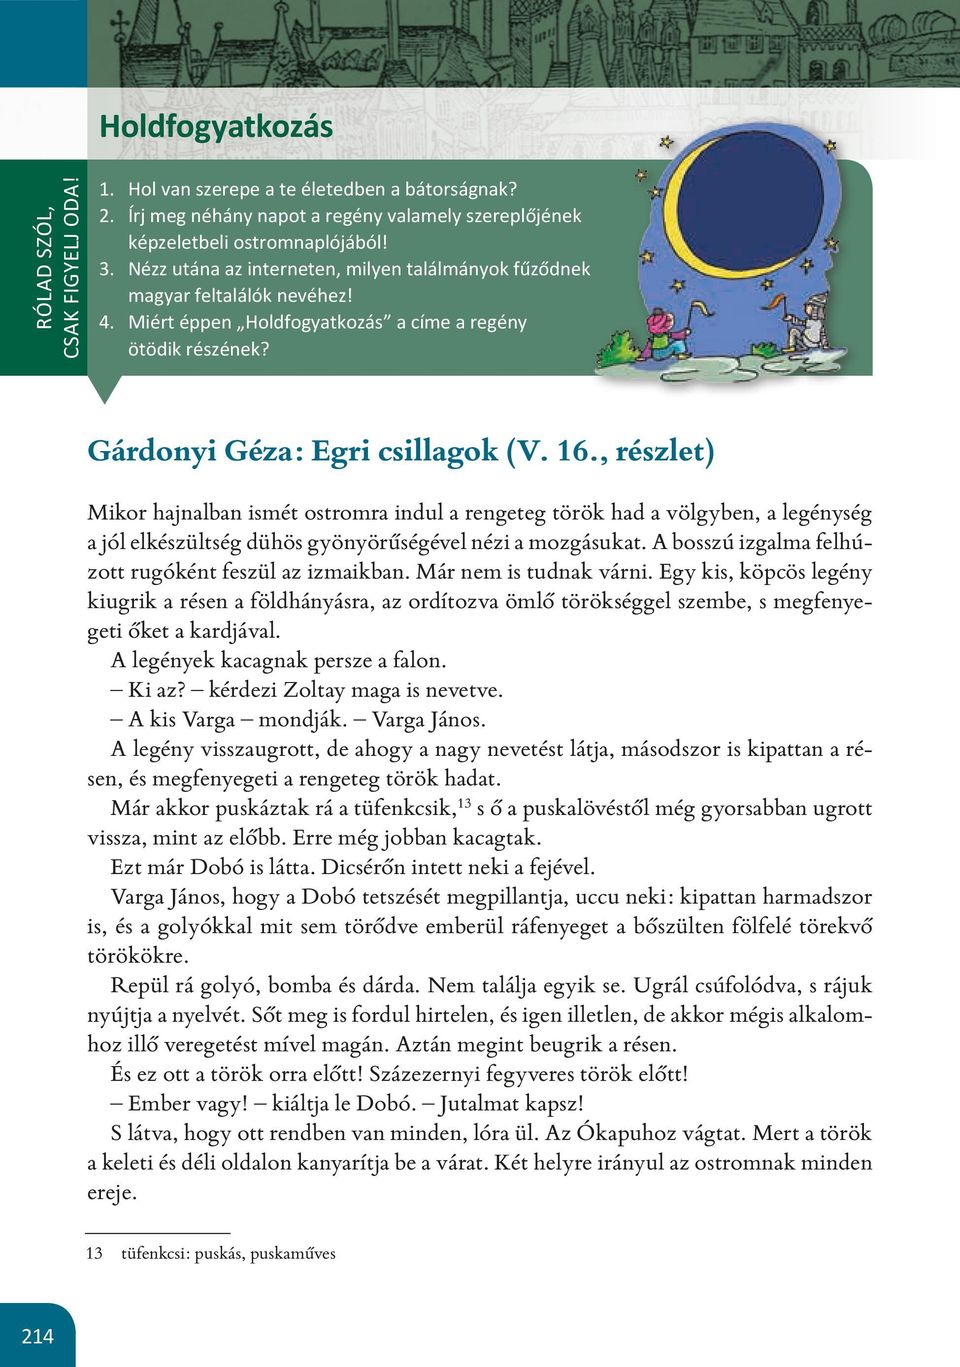 Holdfogyatkozás. Gárdonyi Géza: Egri csillagok (V. 16., részlet) - PDF  Ingyenes letöltés